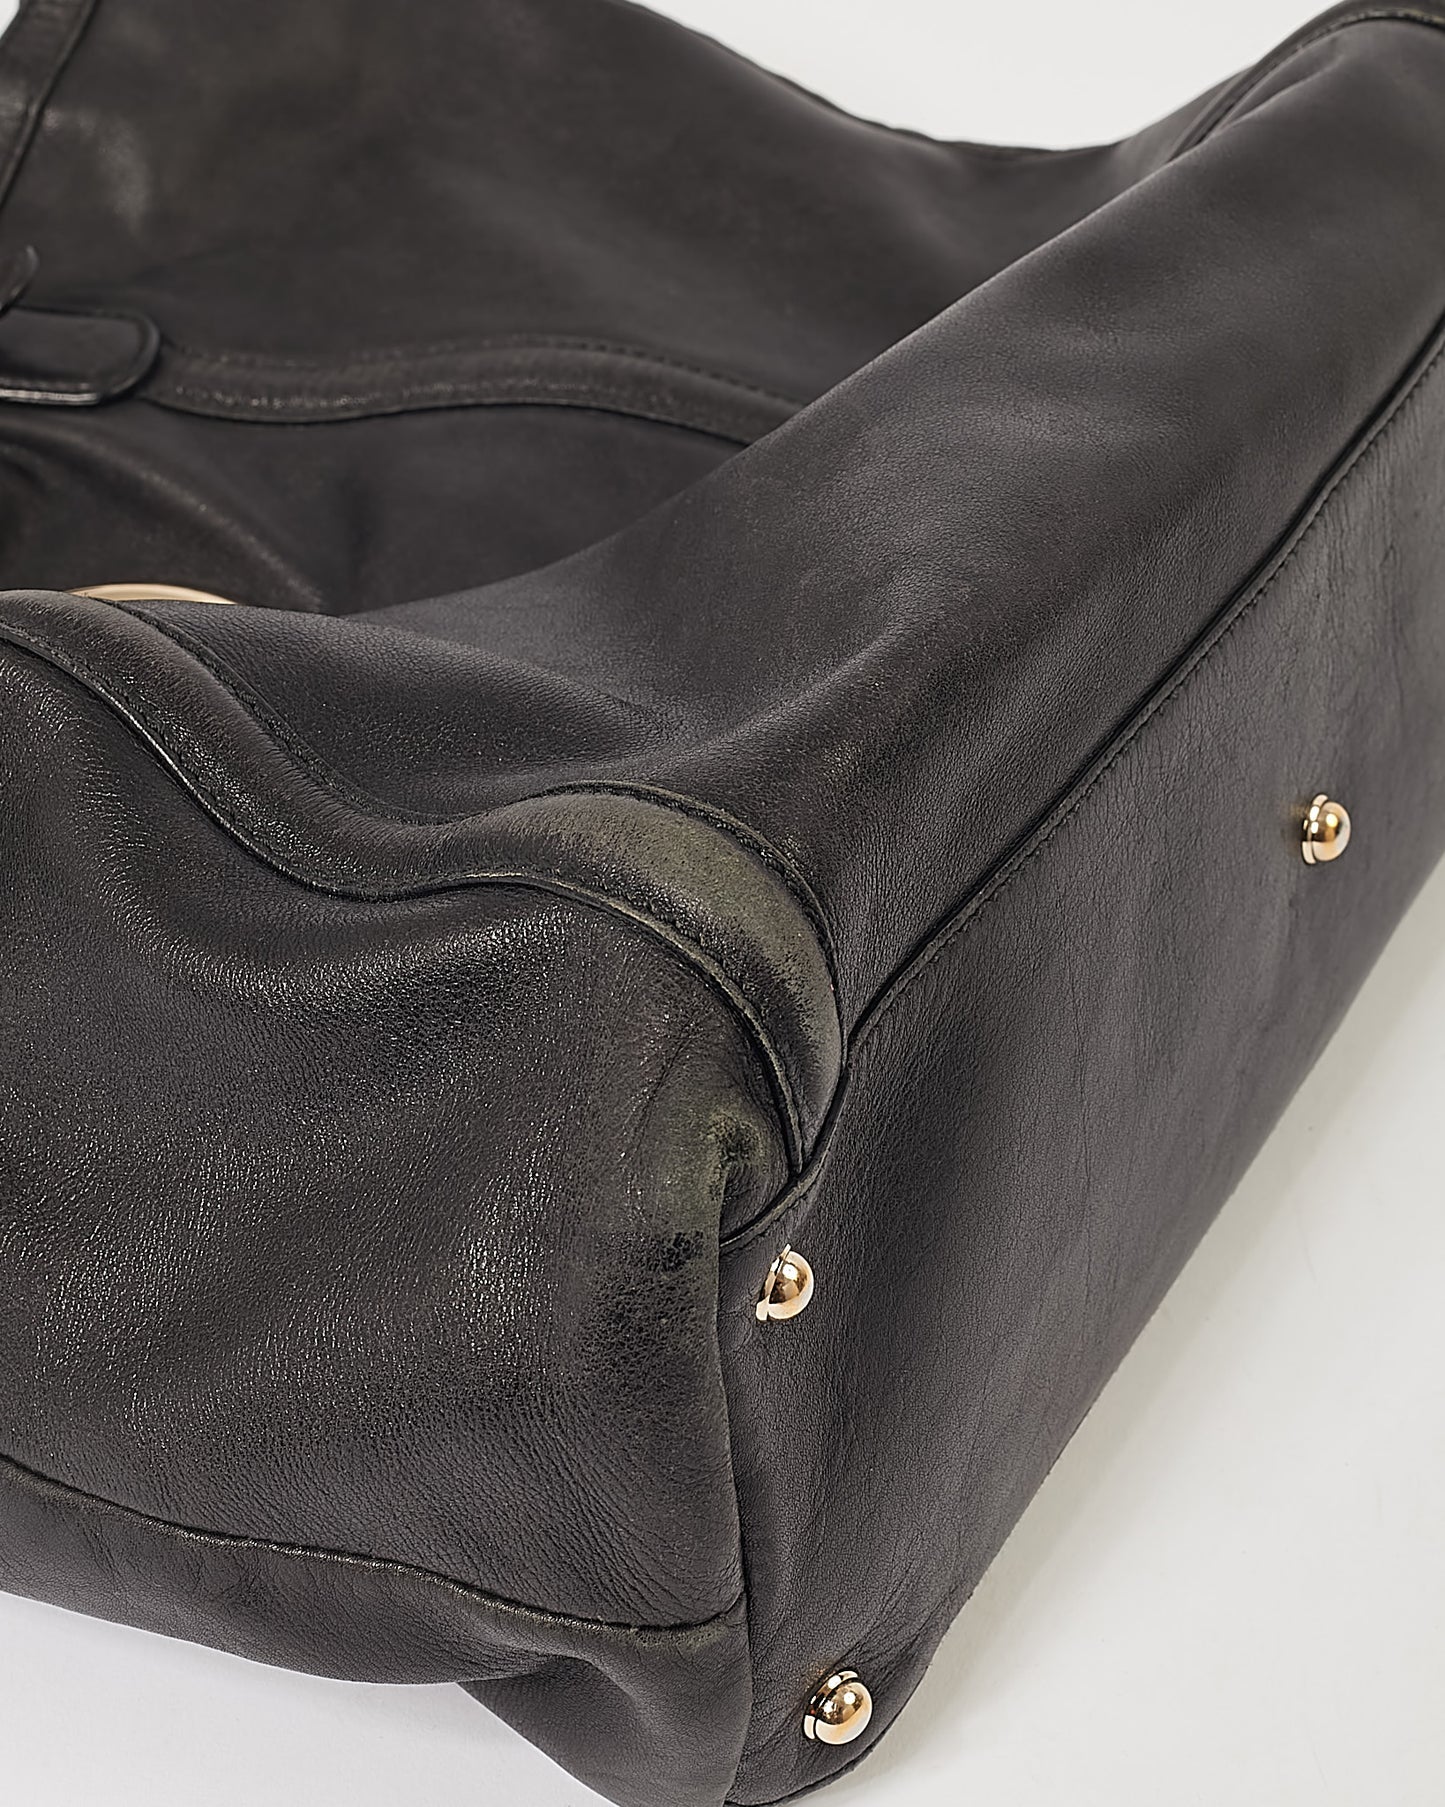 Grand sac fourre-tout GG en cuir noir Gucci